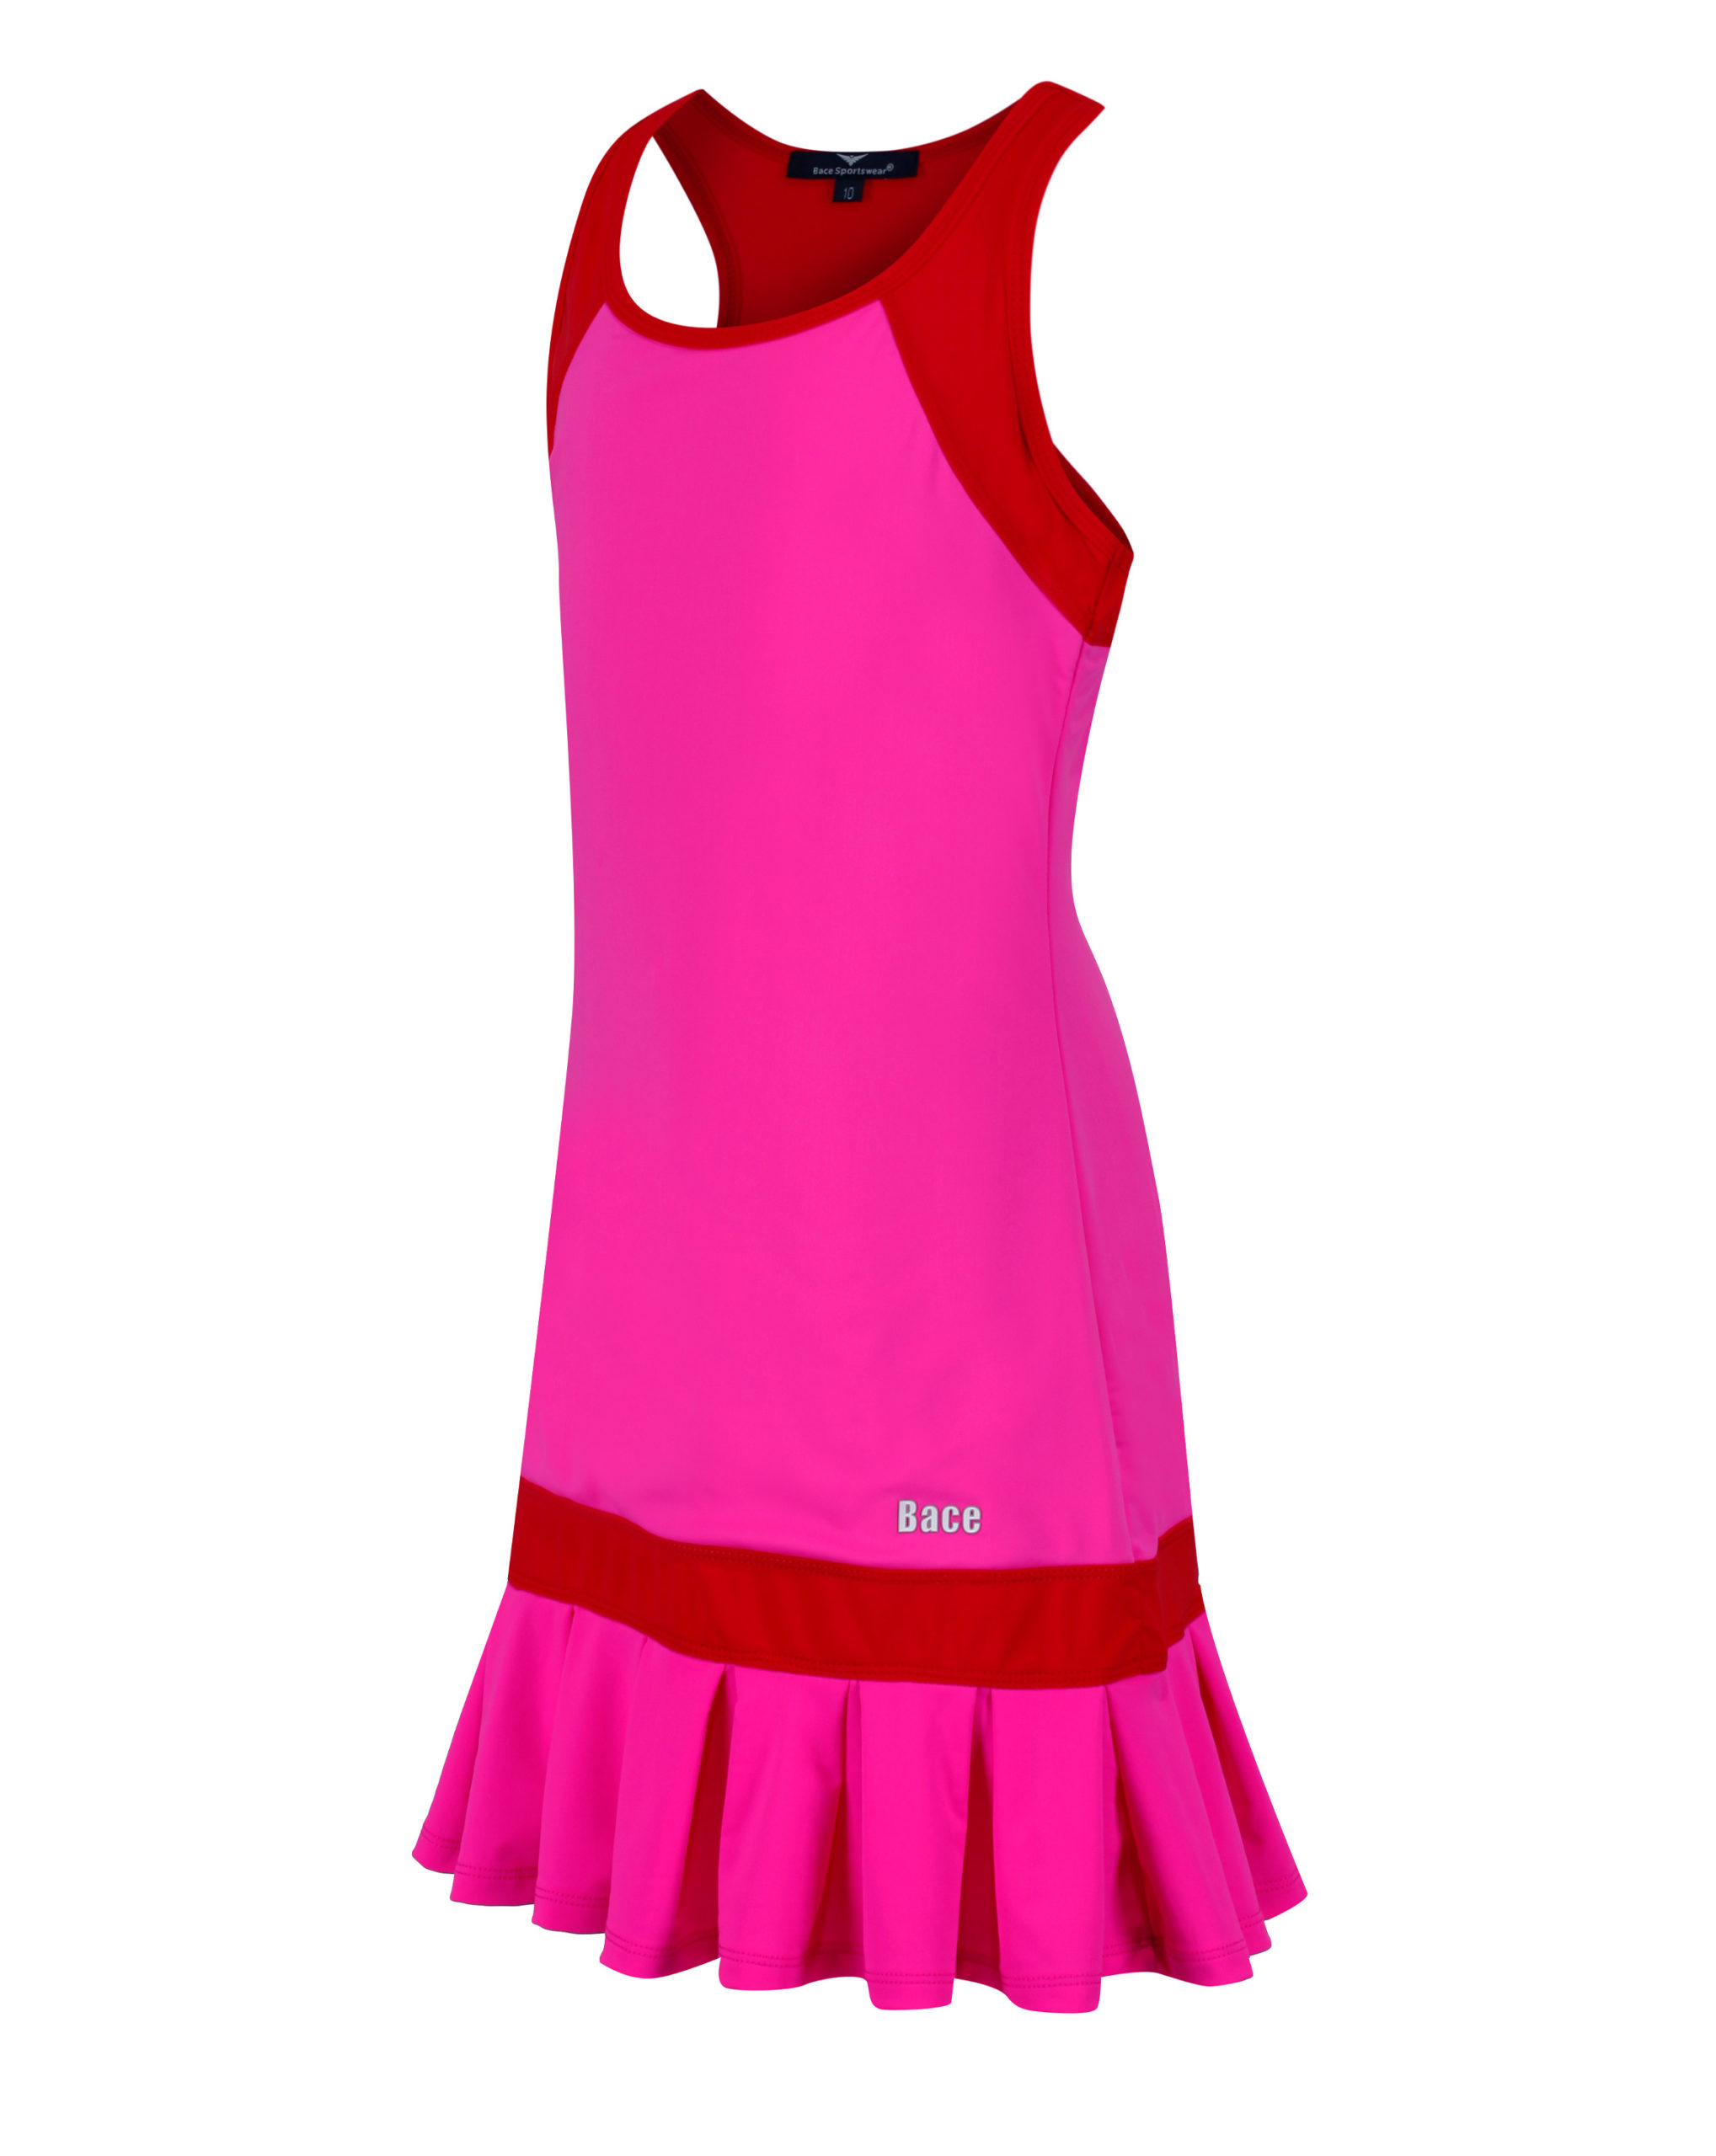 Tennis Dress | Girls Golf Frill Dress | Pink and Red